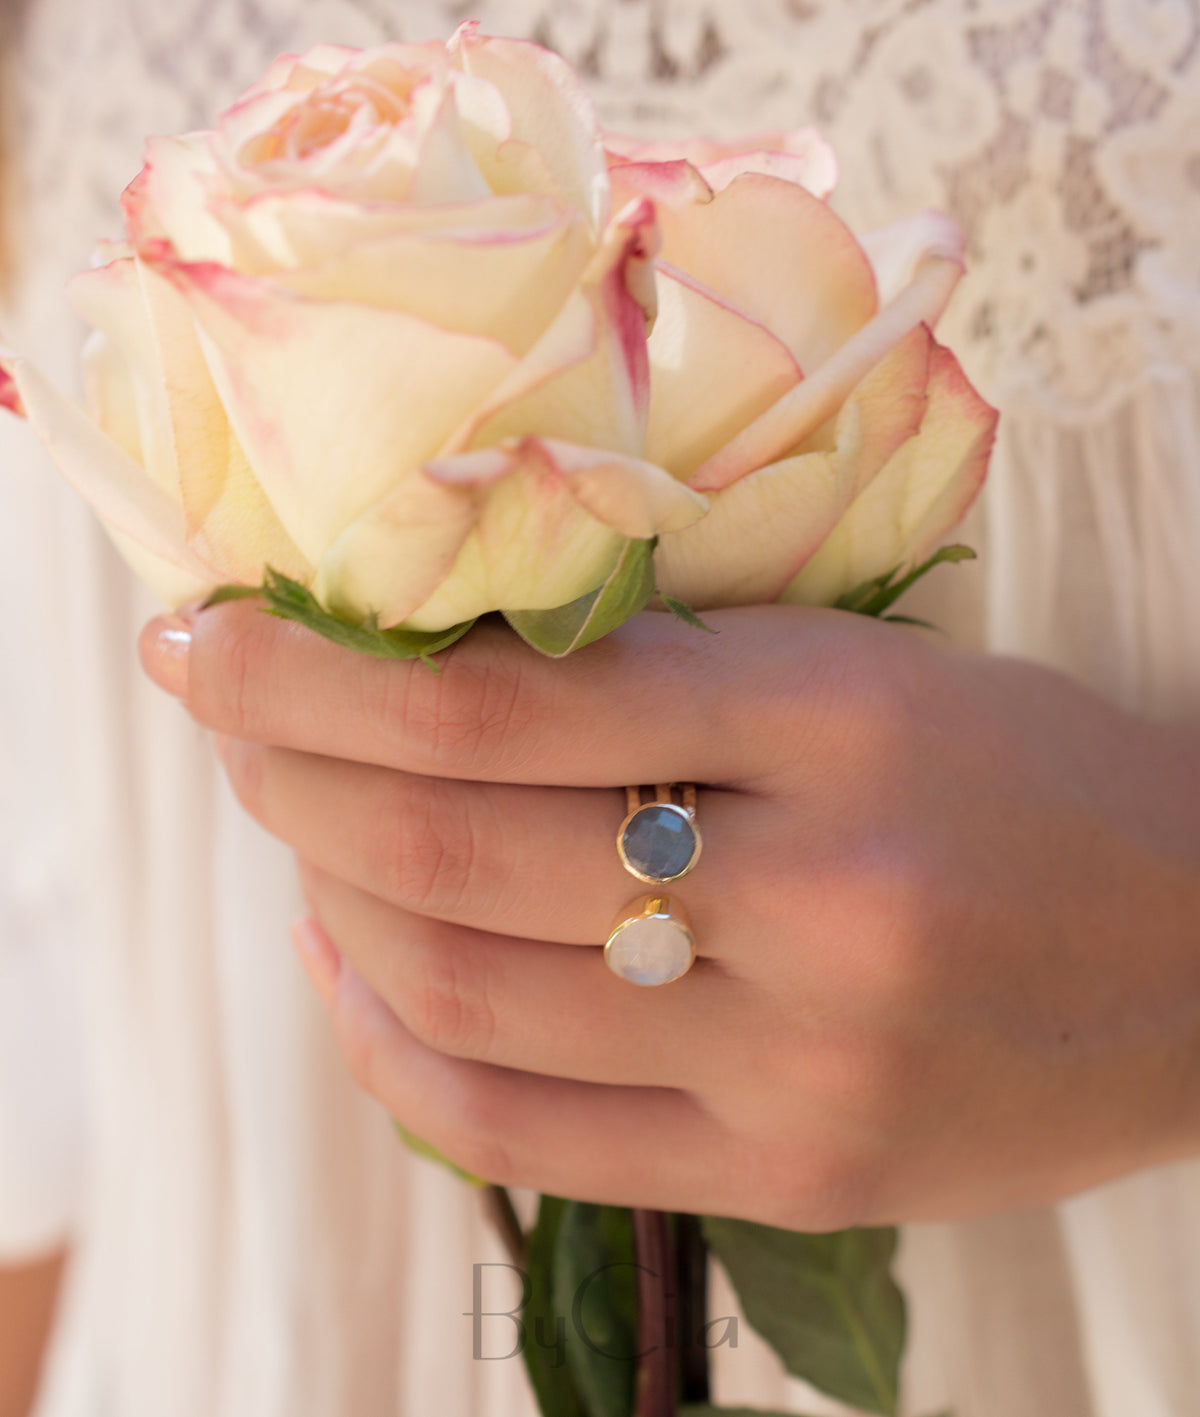 Labradorite Ring * Moonstone Gold Ring * Statement Ring * Gemstone Ring * Pink * Bridal Ring * Wedding Ring * Organic Ring * Natural*BJR089